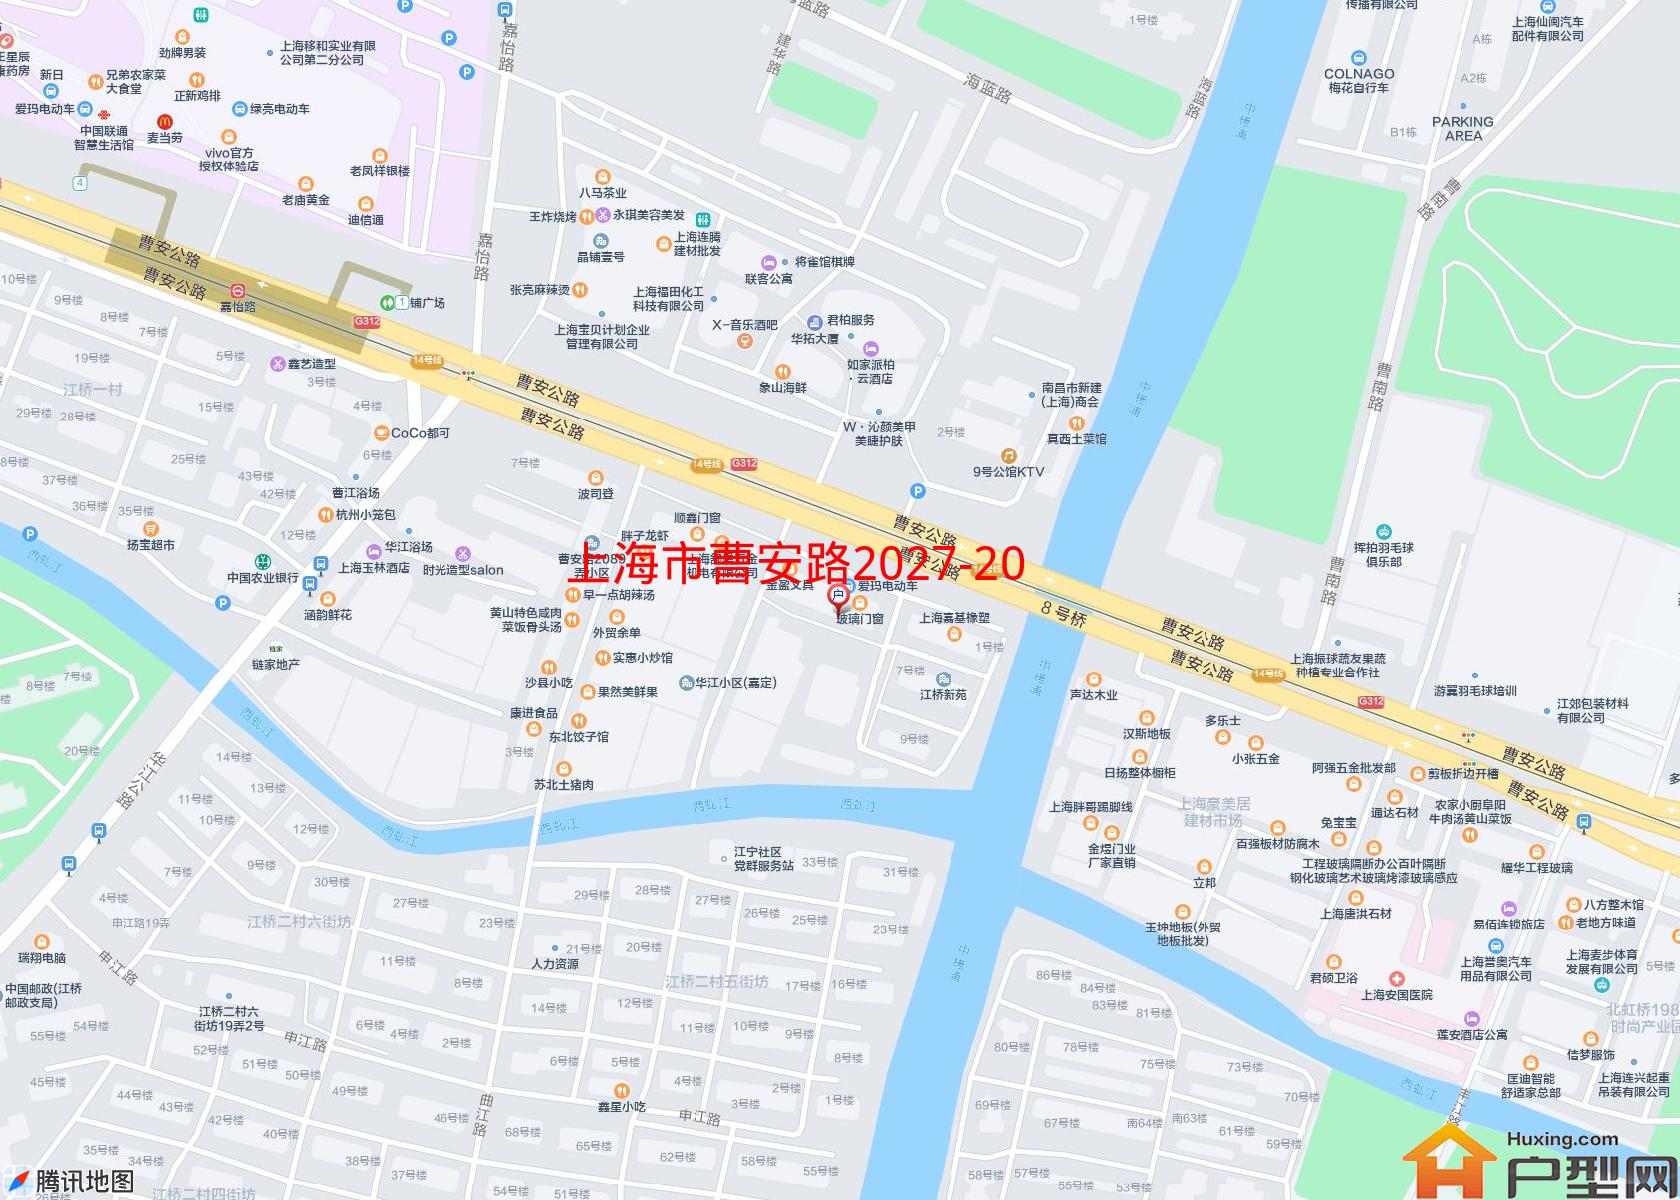 曹安路2027-2053号小区小区 - 户型网